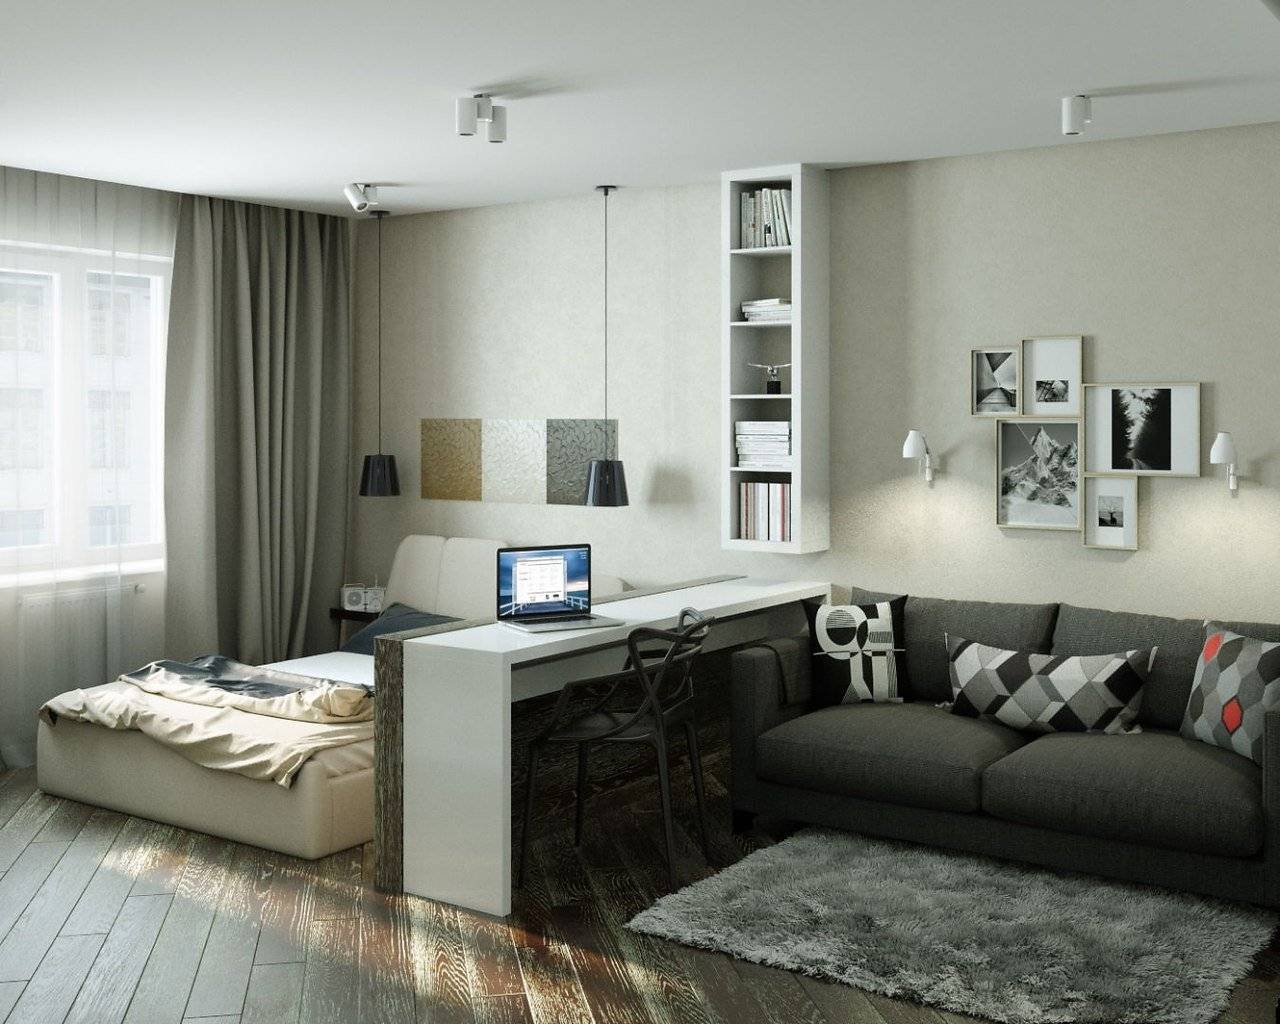 Как расставить мебель в однокомнатной квартире: идеи на фото